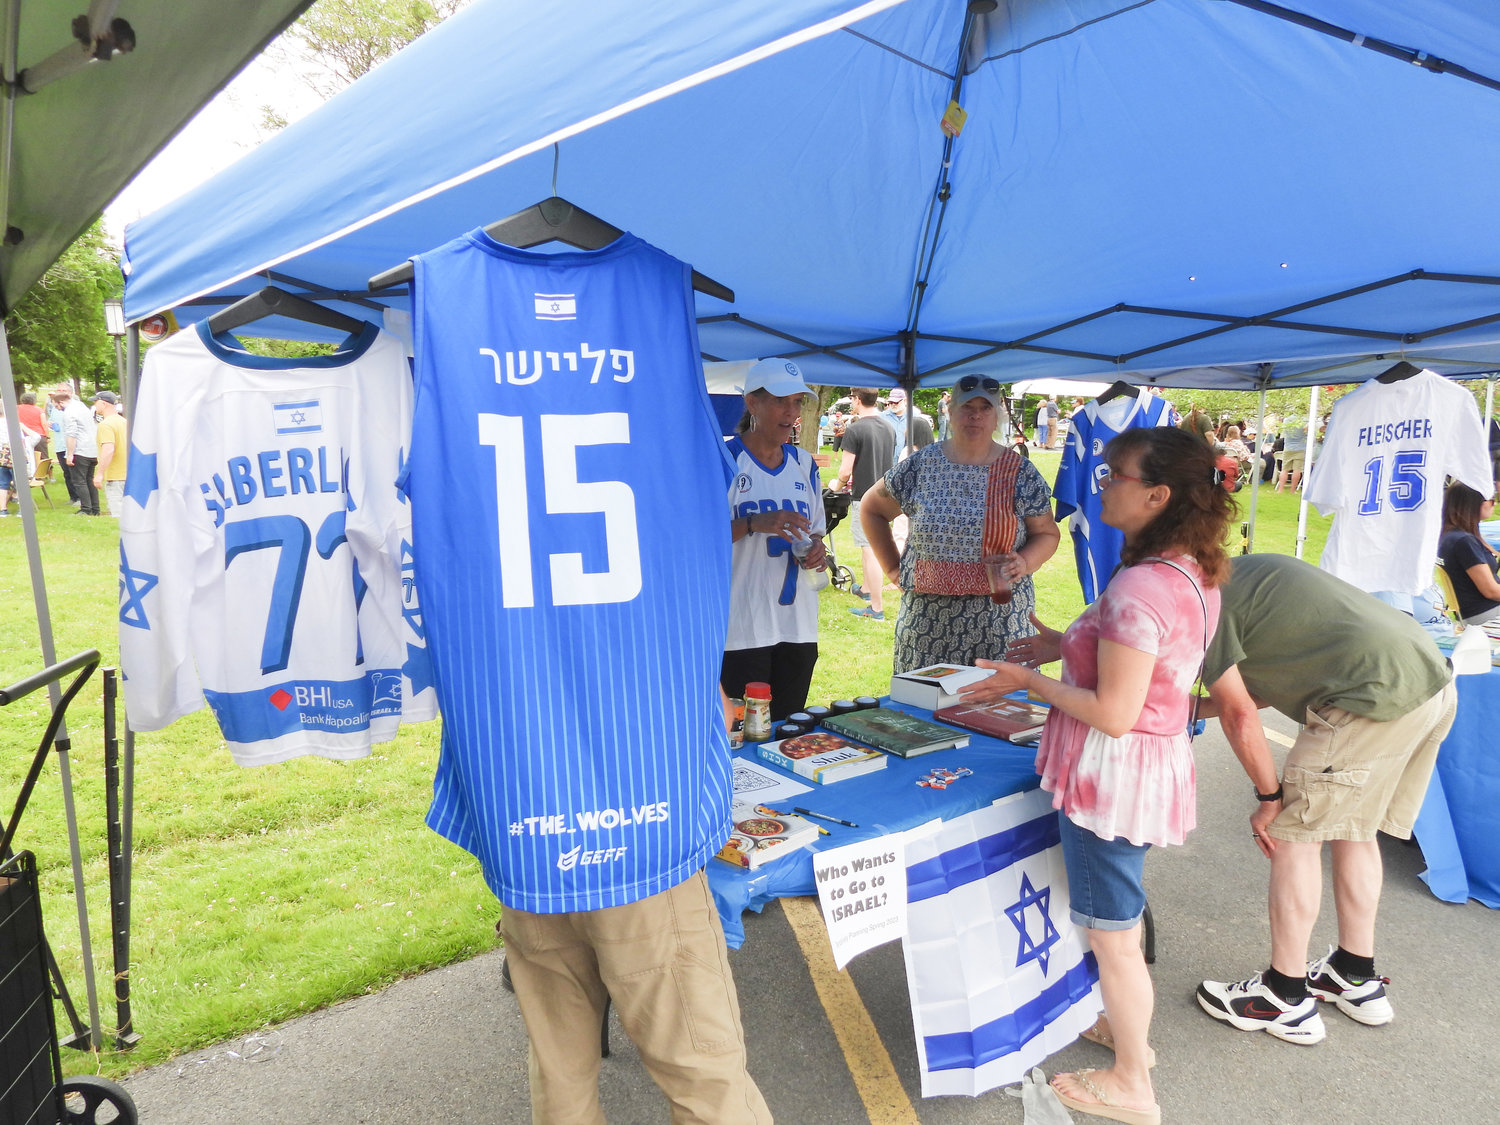 Inauguracyjny festiwal kultury żydowskiej "Jewtica" rozpoczął się w niedzielę 12 czerwca setkami osób w Centrum Społeczności Żydowskiej w Utica.  Ludzie zjeżdżali się z całego świata, aby dzielić się kulturą, skosztować pysznych potraw i nauczyć się czegoś nowego.